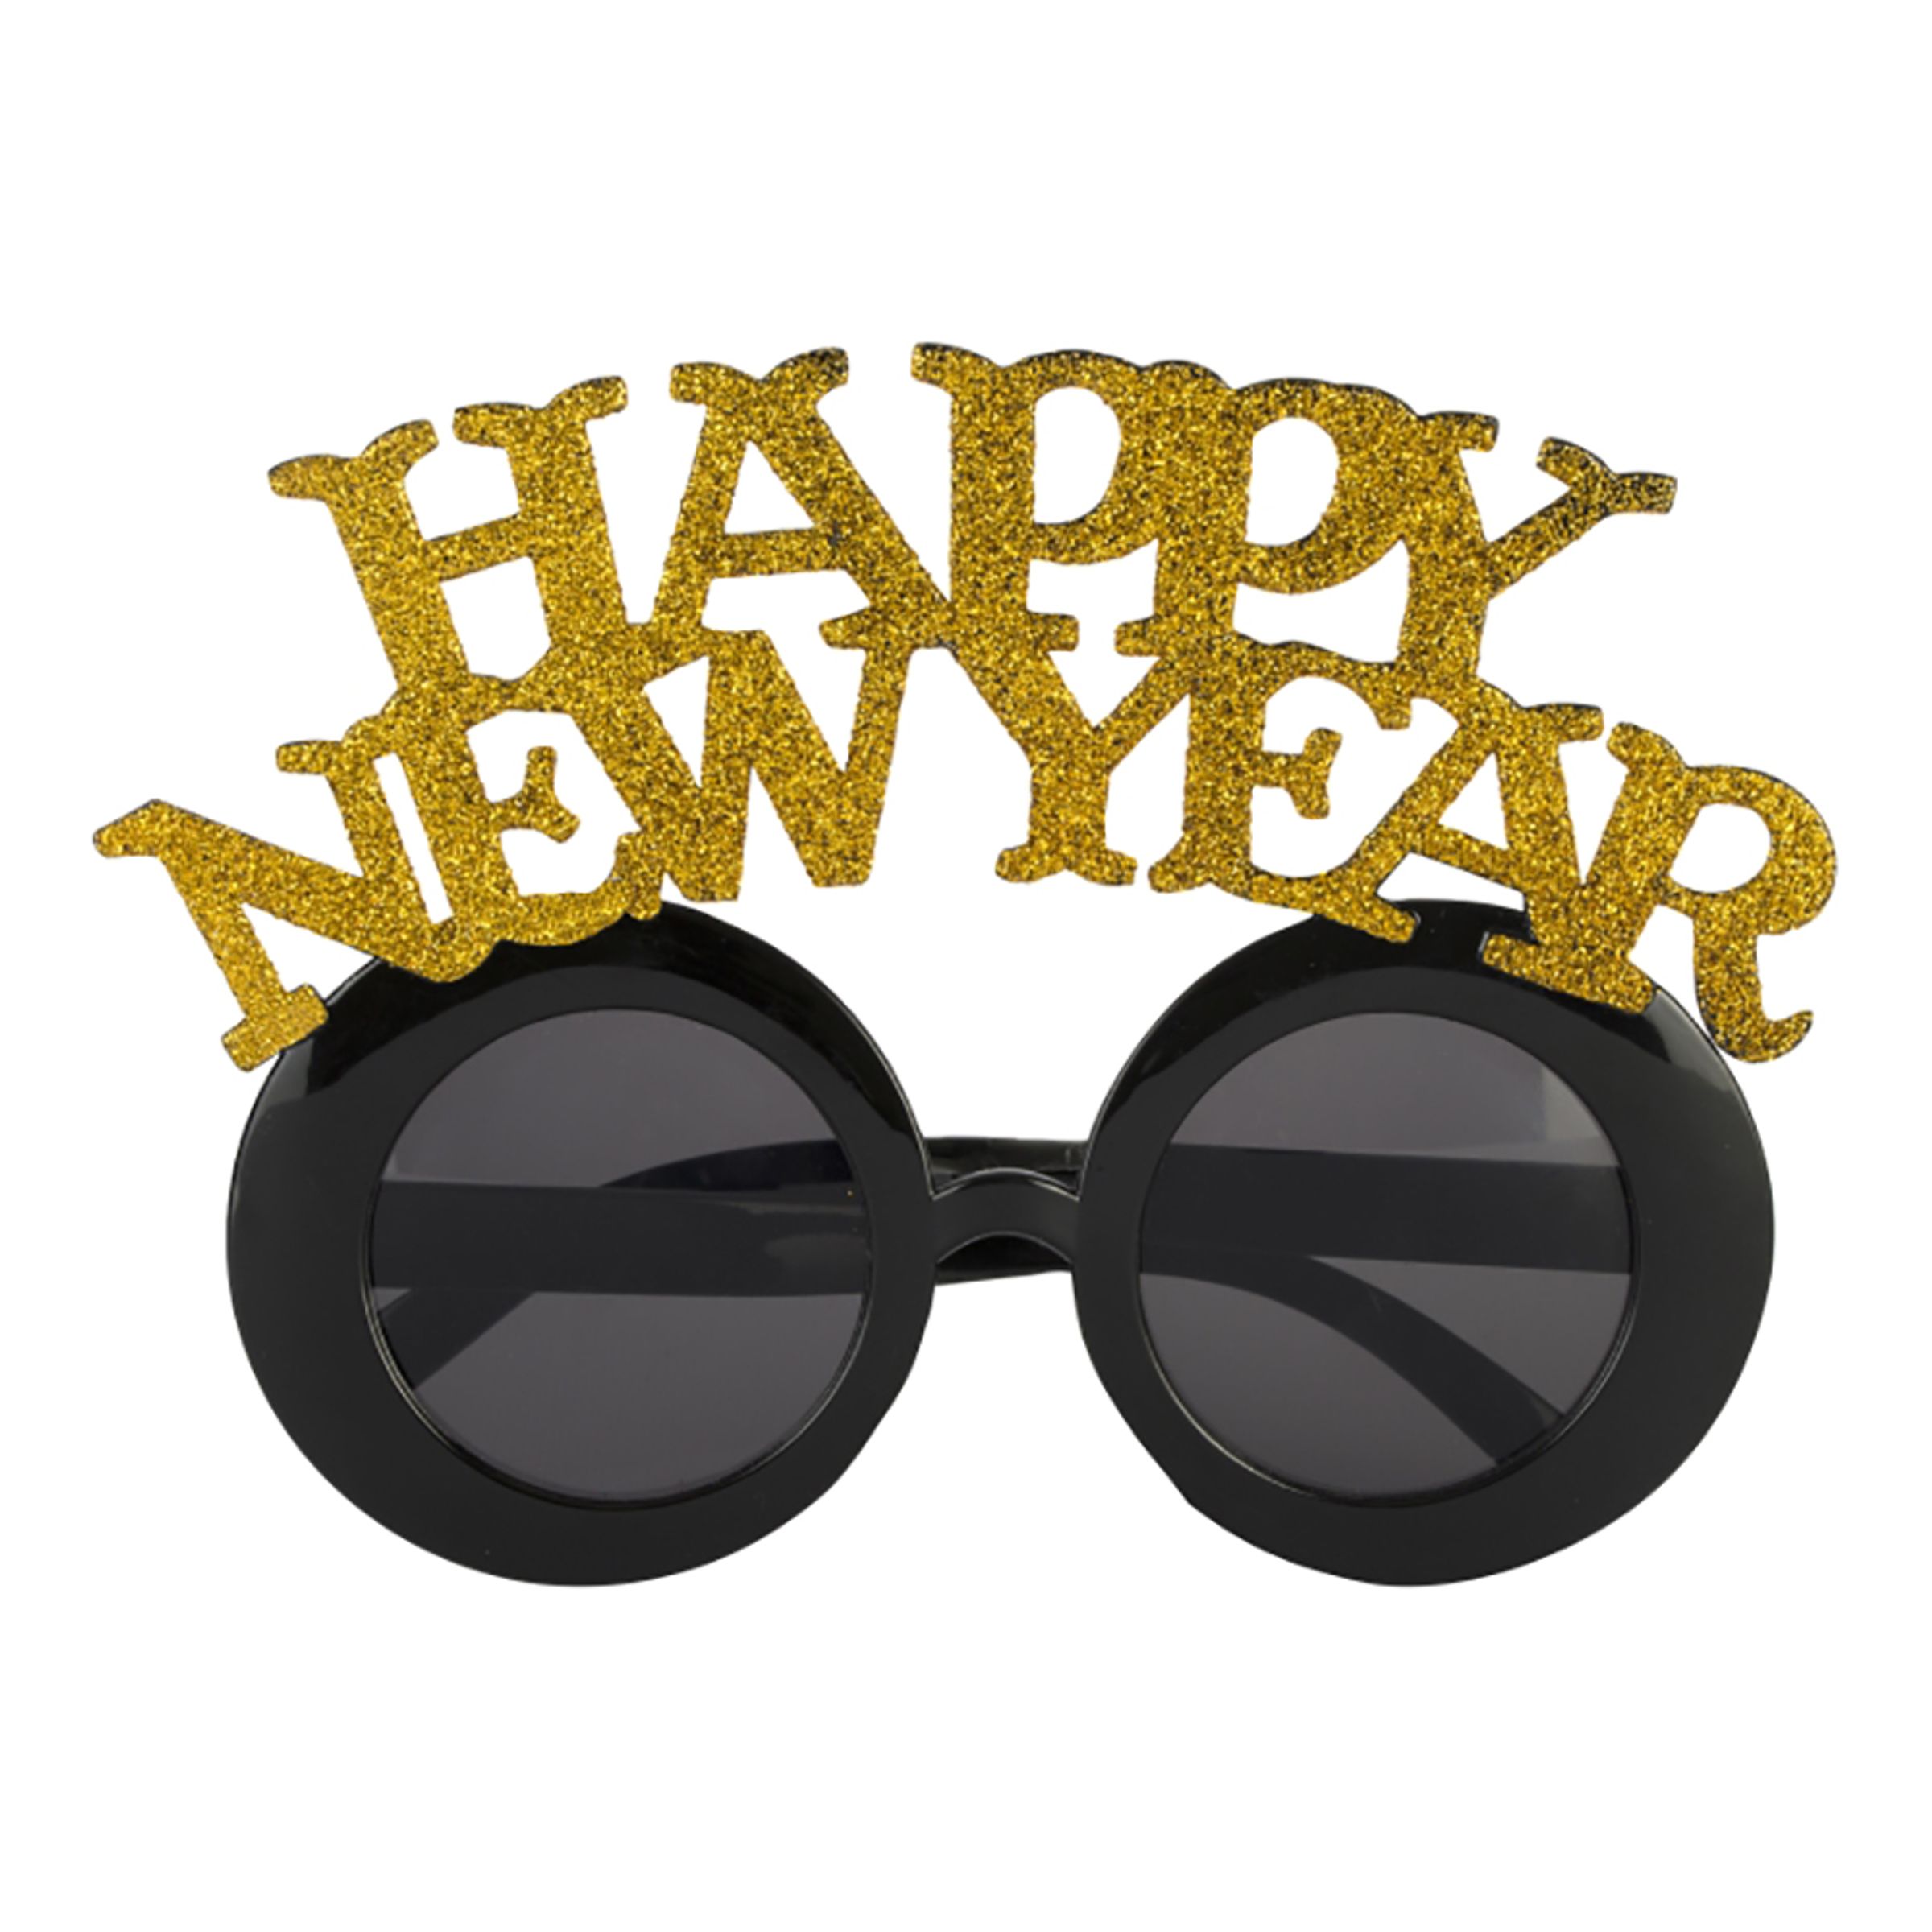 Happy New Year Glasögon - One size